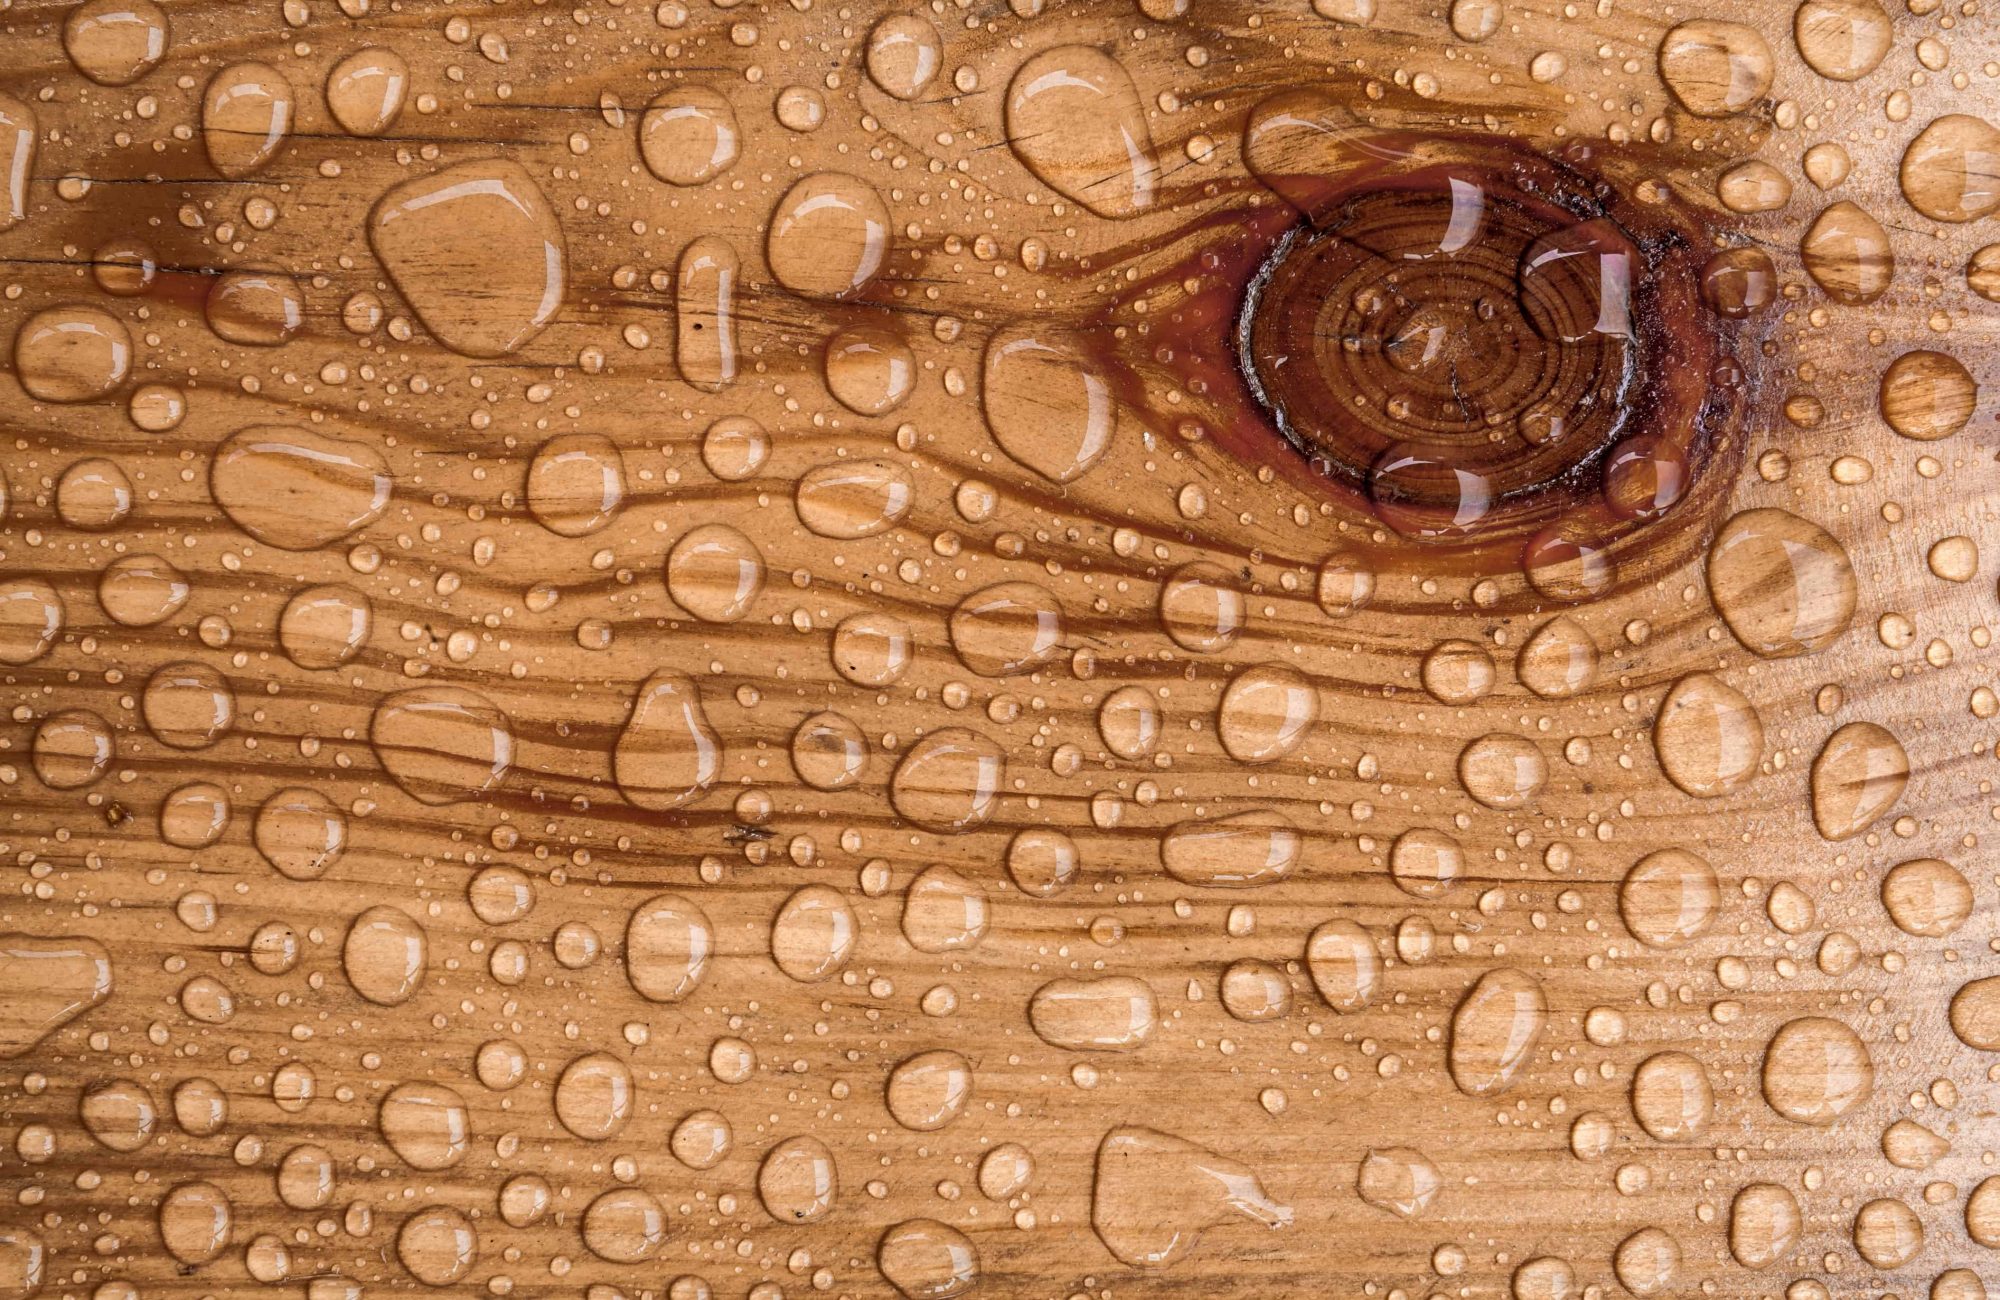 water drop on a wooden floor